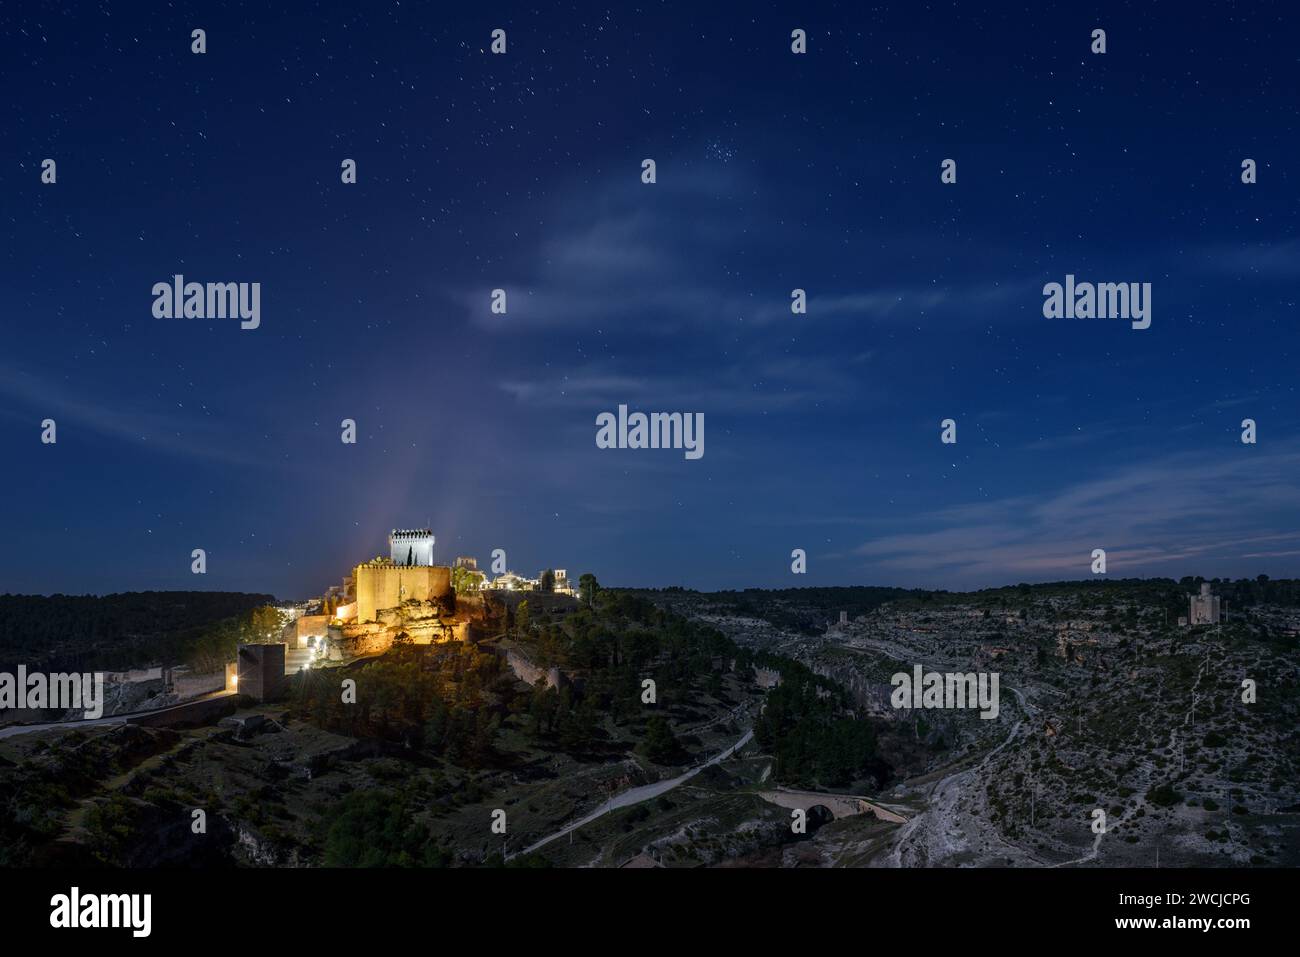 Paysage nocturne de la ville médiévale d'Alarcon avec son château et le Parador Nacional au sommet de la montagne, Cuenca, Espagne. Banque D'Images